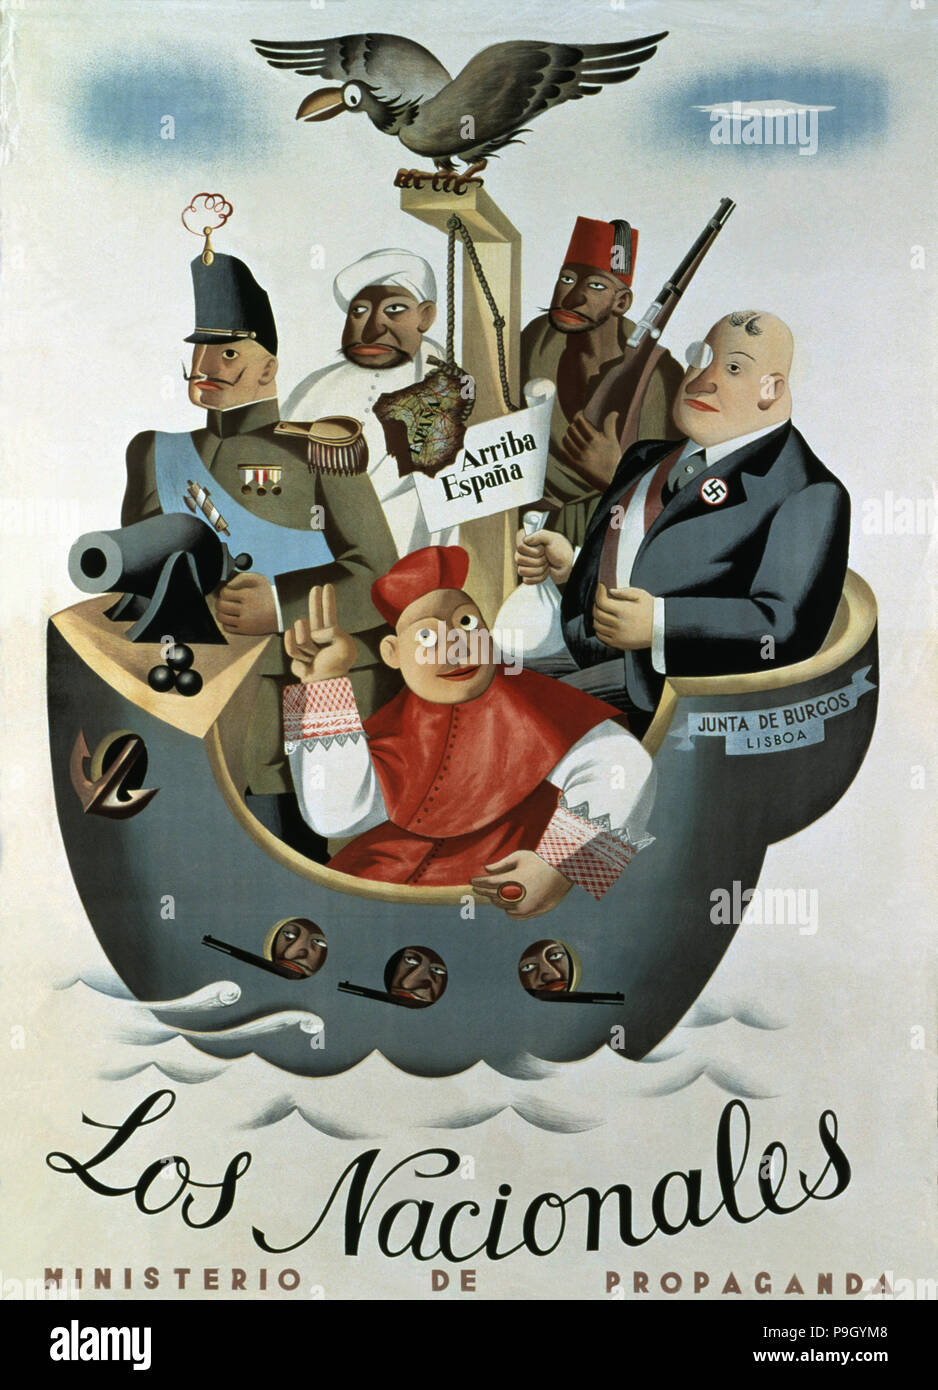 Guerra Civil española (1936 - 1939), "El Nacional", póster publicado por el Ministerio de propaganda... Foto de stock